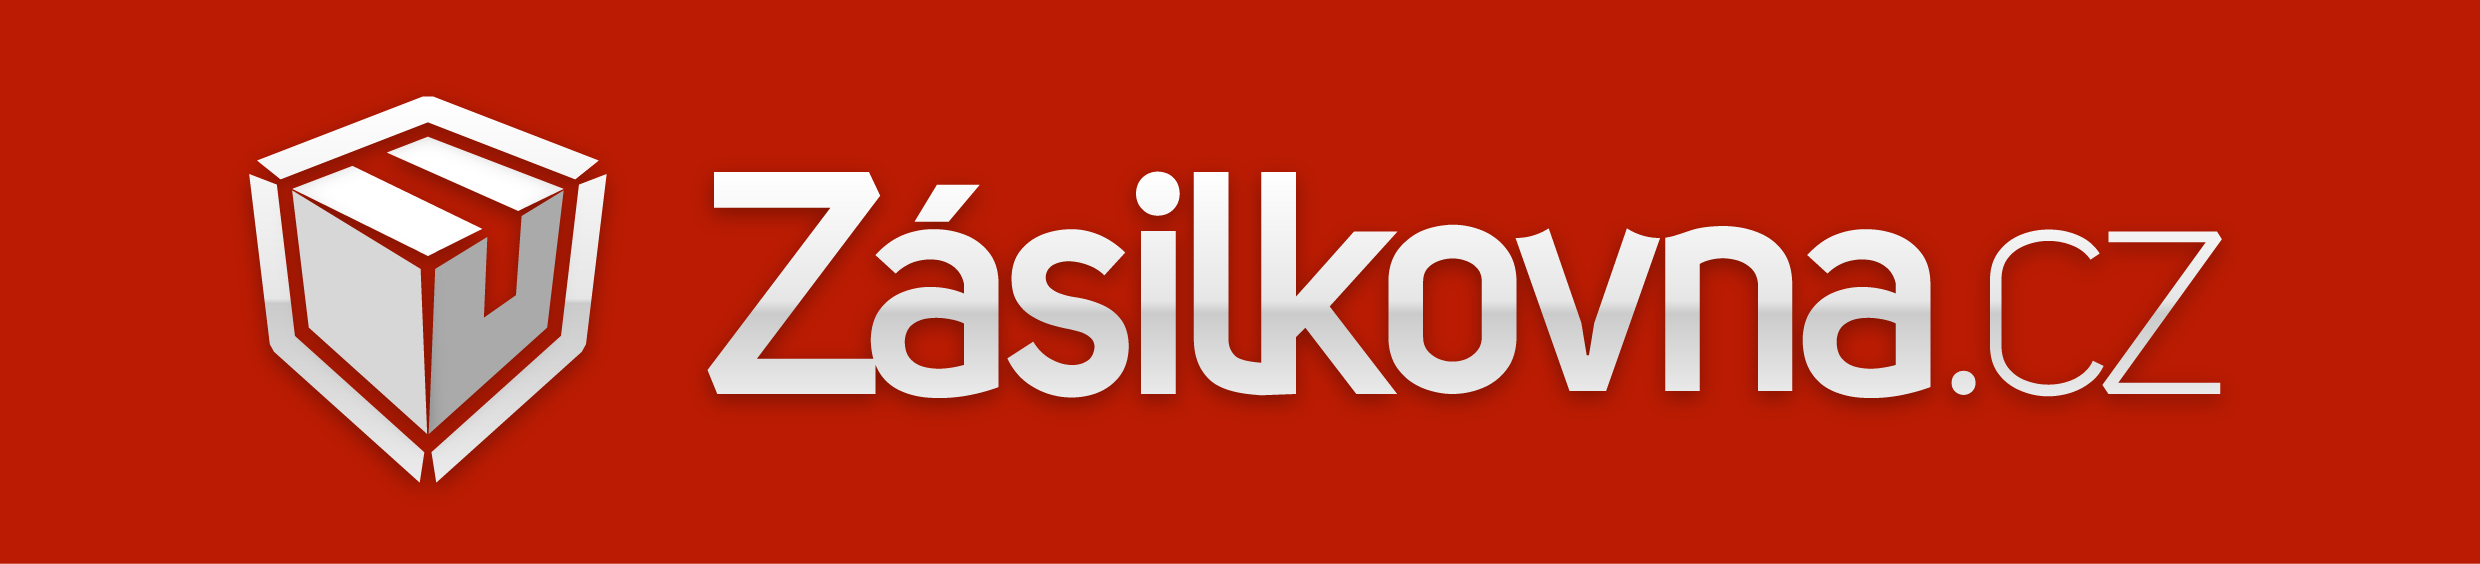 Zasilkovna logo obdelnik zakladni verze WEB